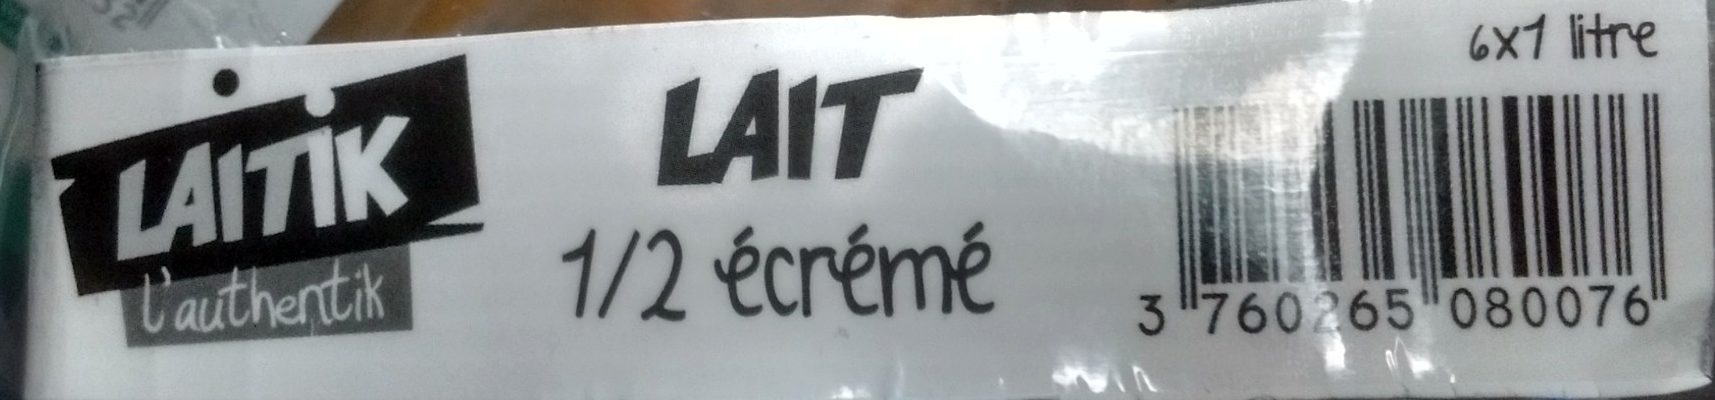 Lait Ecrémé stérilisé U.H.T. Pack de 6 x 1 Litre - Produkt - fr